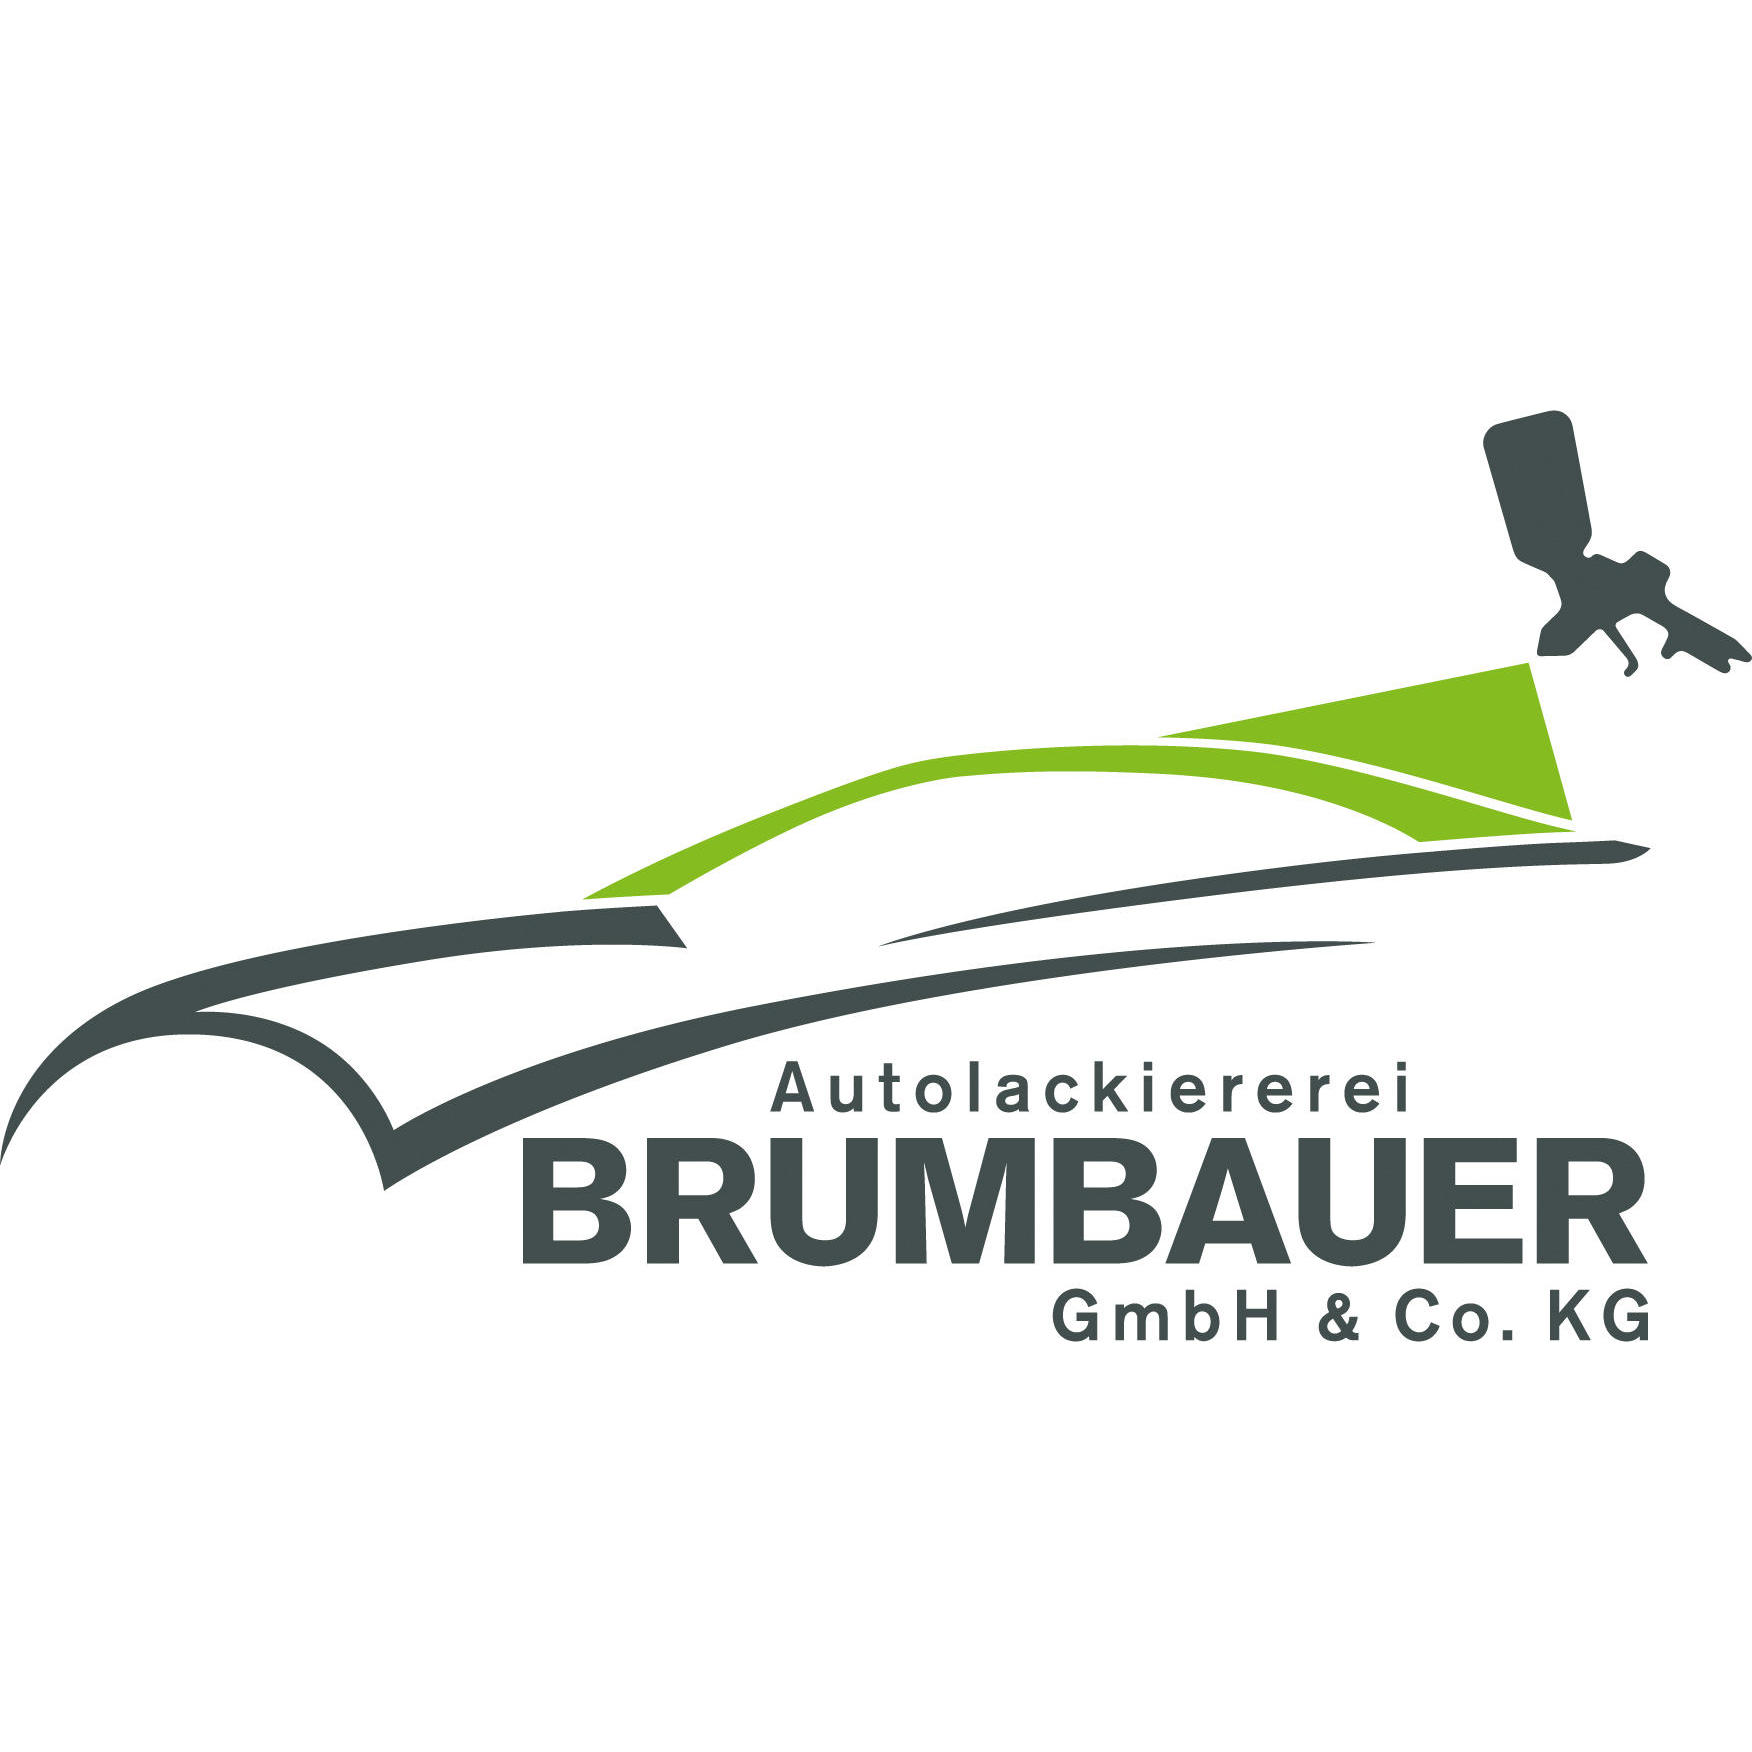 GmbH & Co. KG Autolackiererei Brumbauer Logo